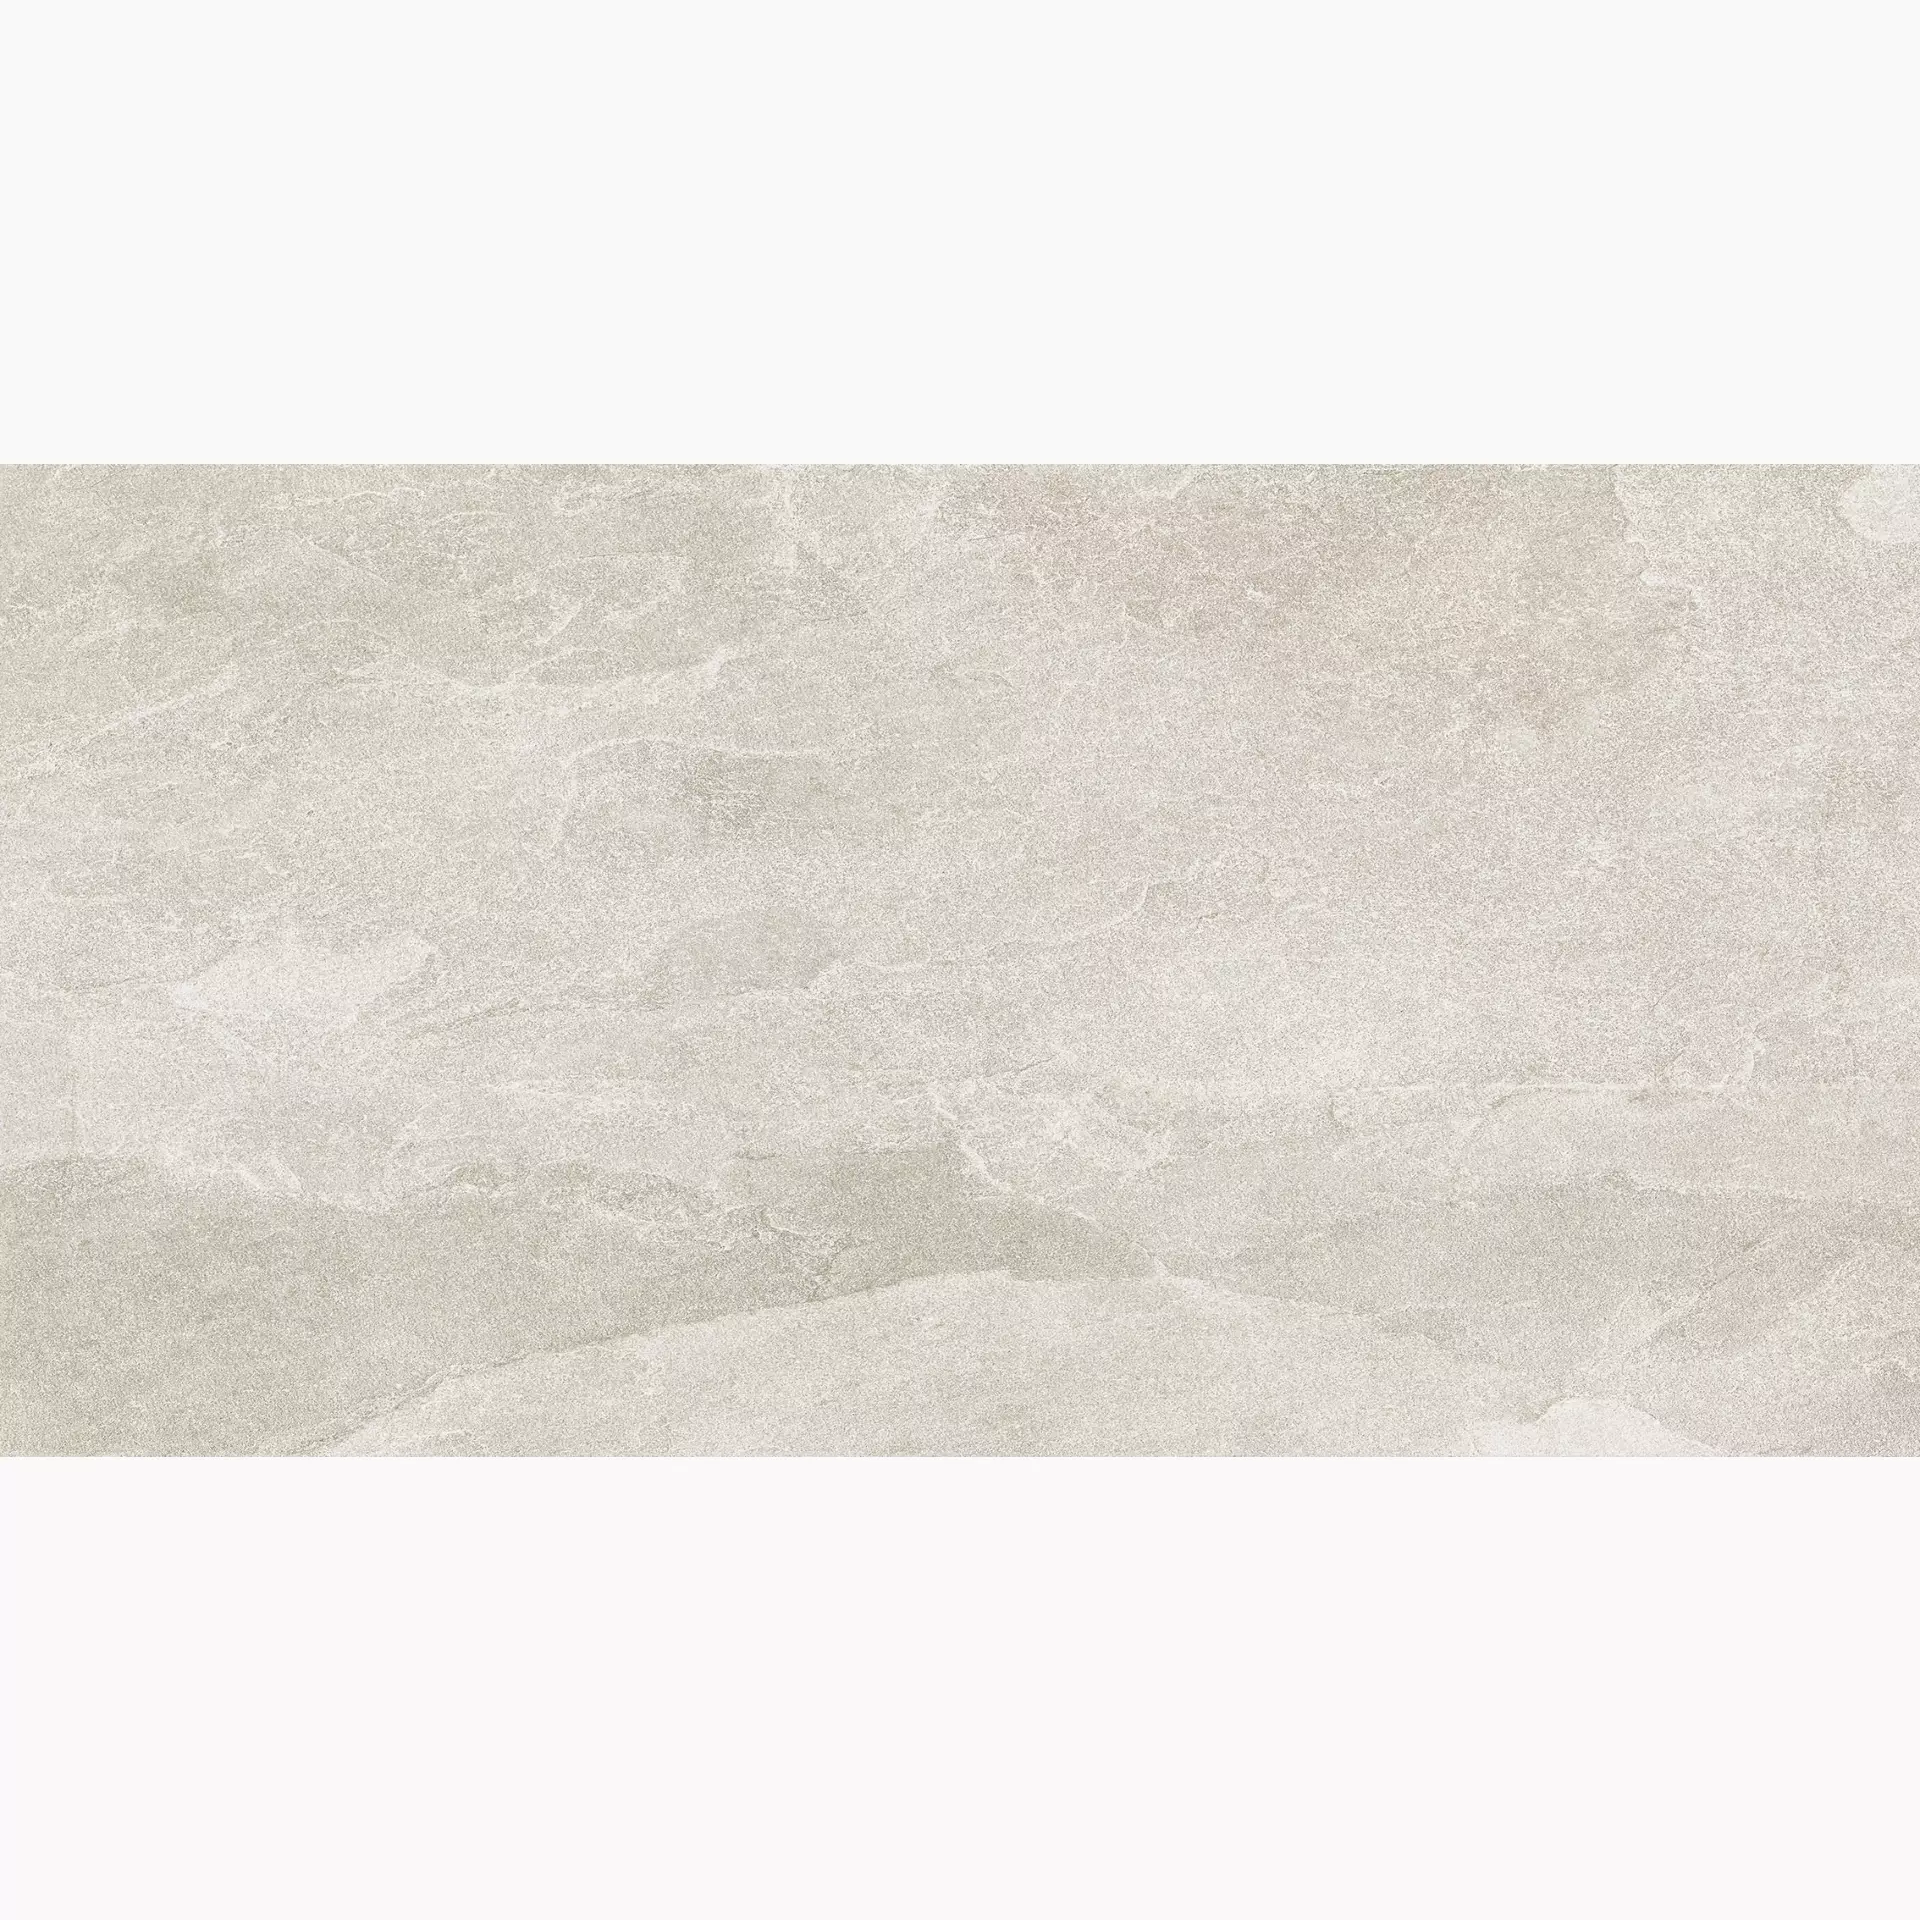 Florim Natural Stone Of Cerim White Naturale – Matt White 752006 matt natur 60x120cm rektifiziert 9mm